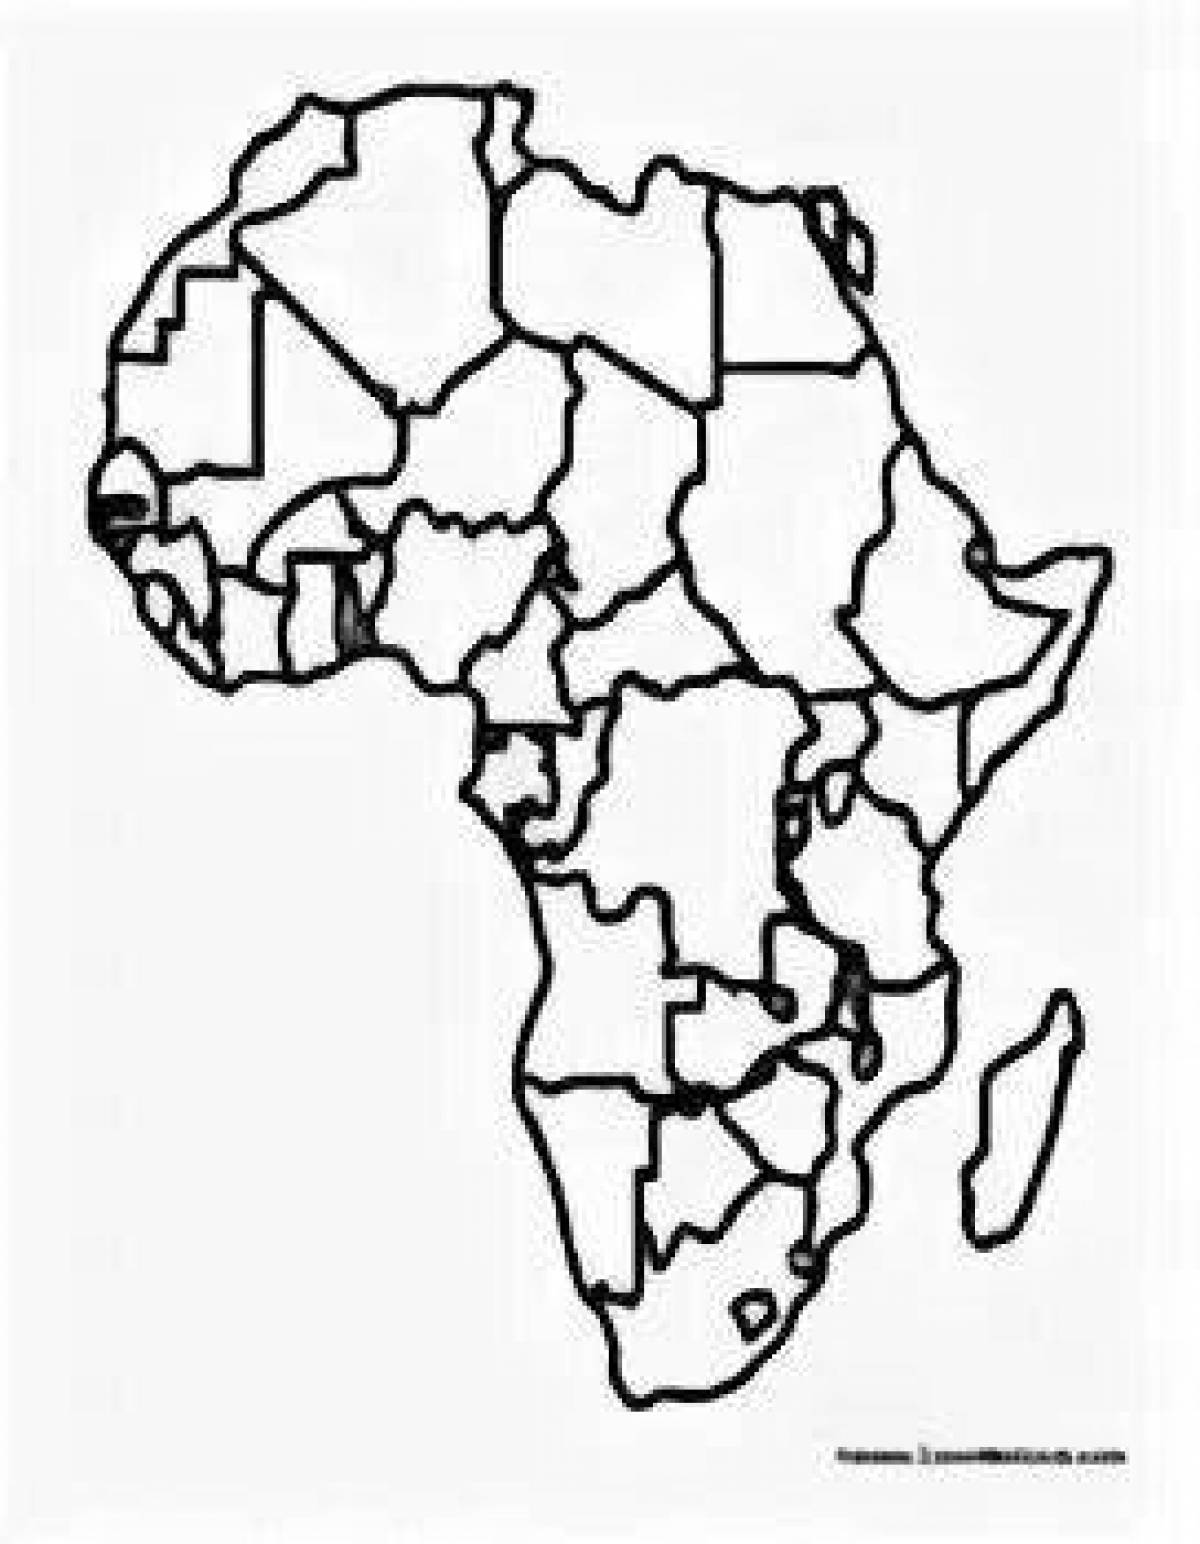 Политическая карта Африки без названий